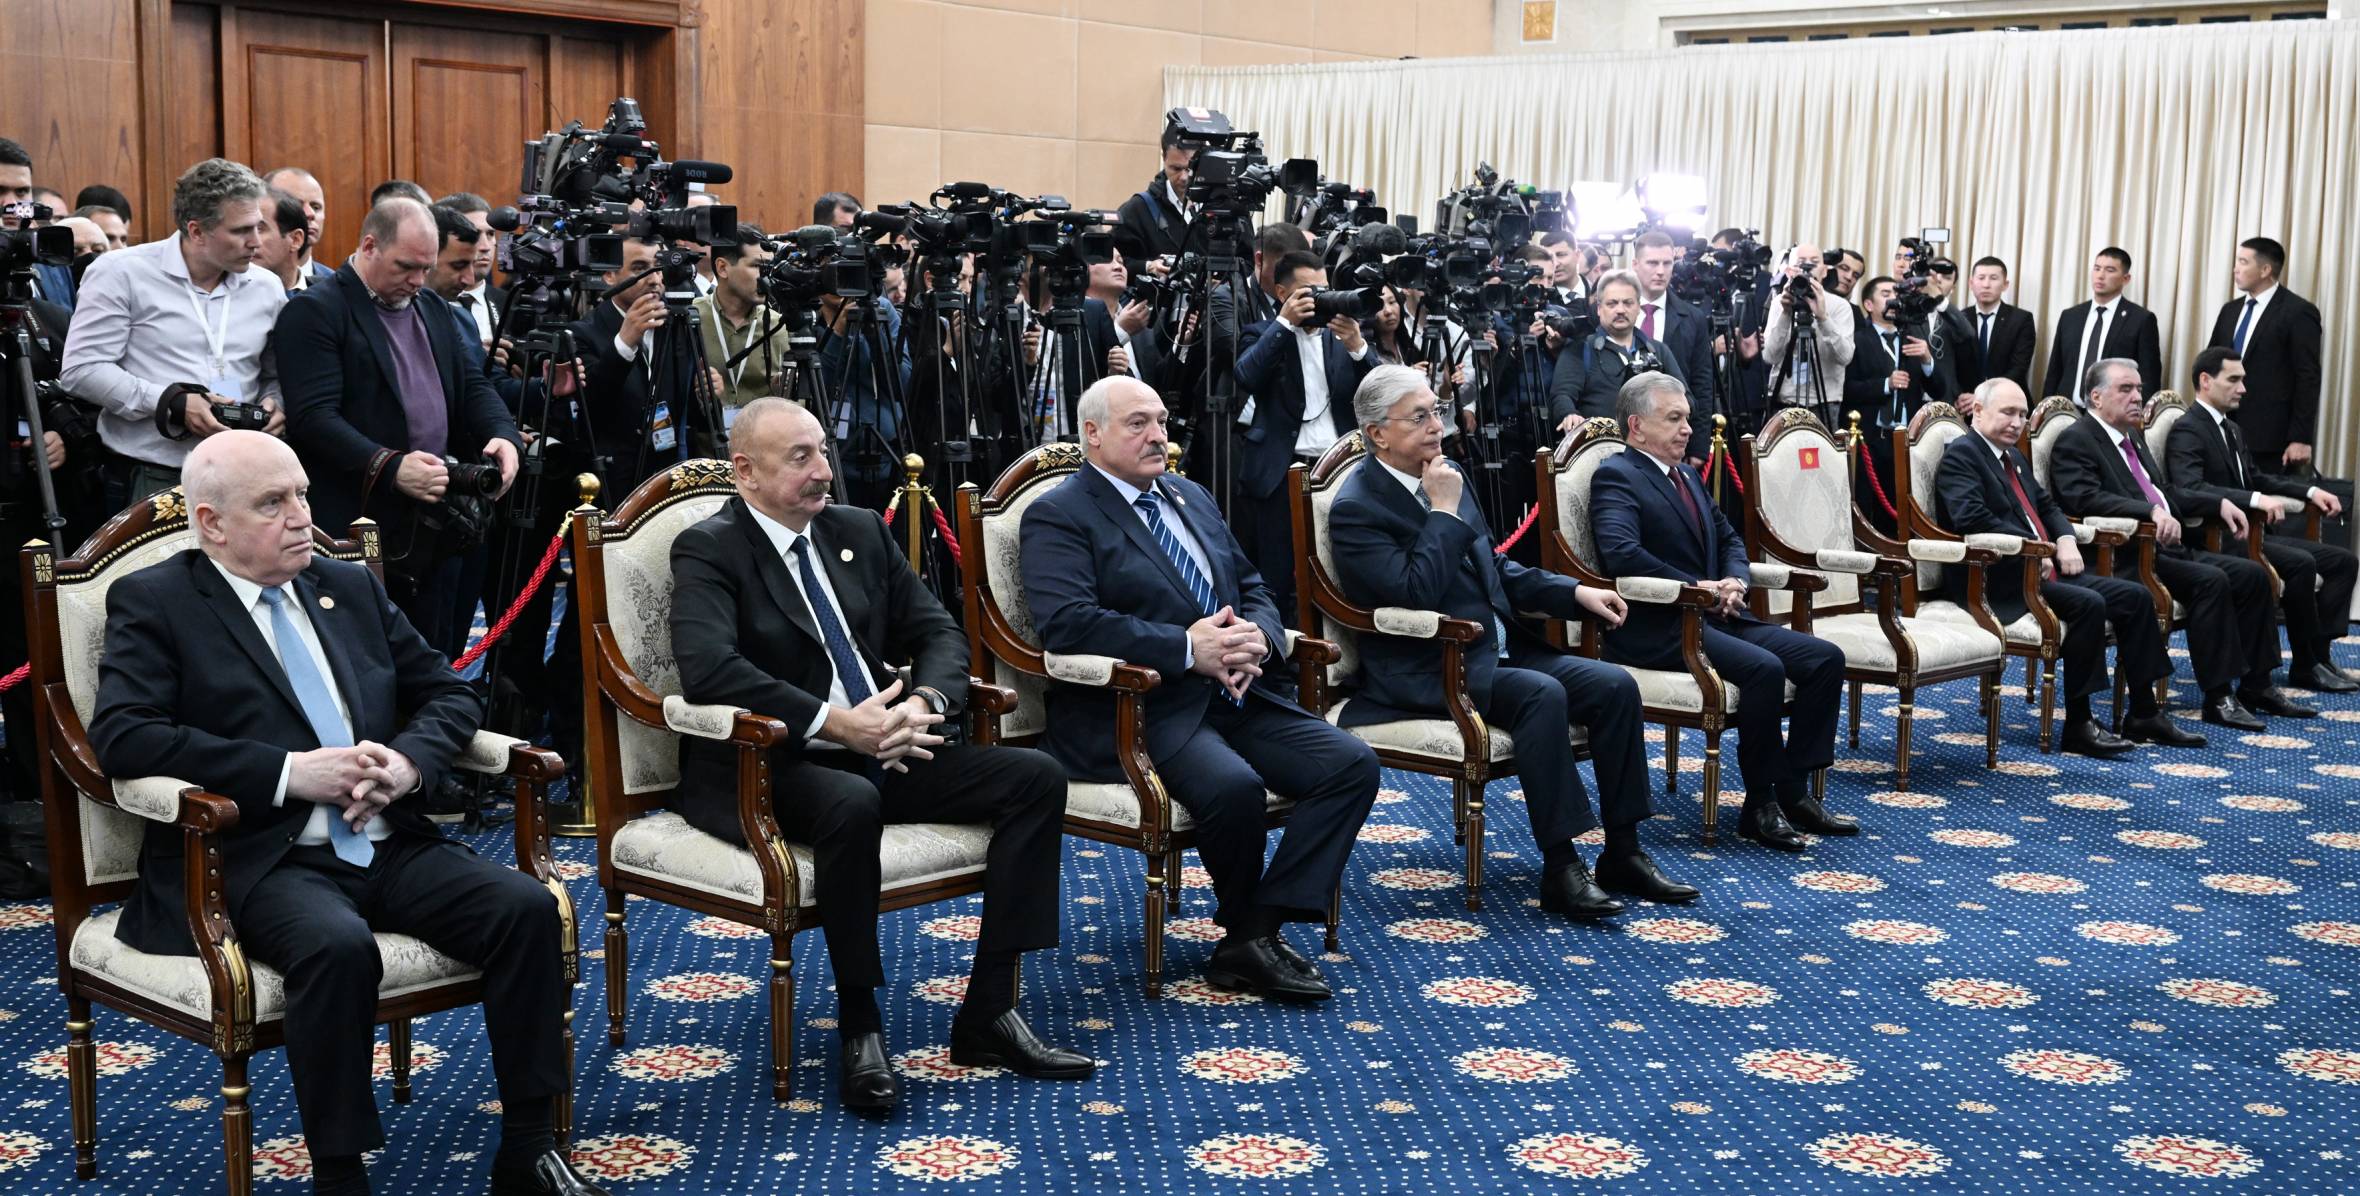 Ilham Aliyev attended the ceremony to award President Shavkat Mirziyoyev